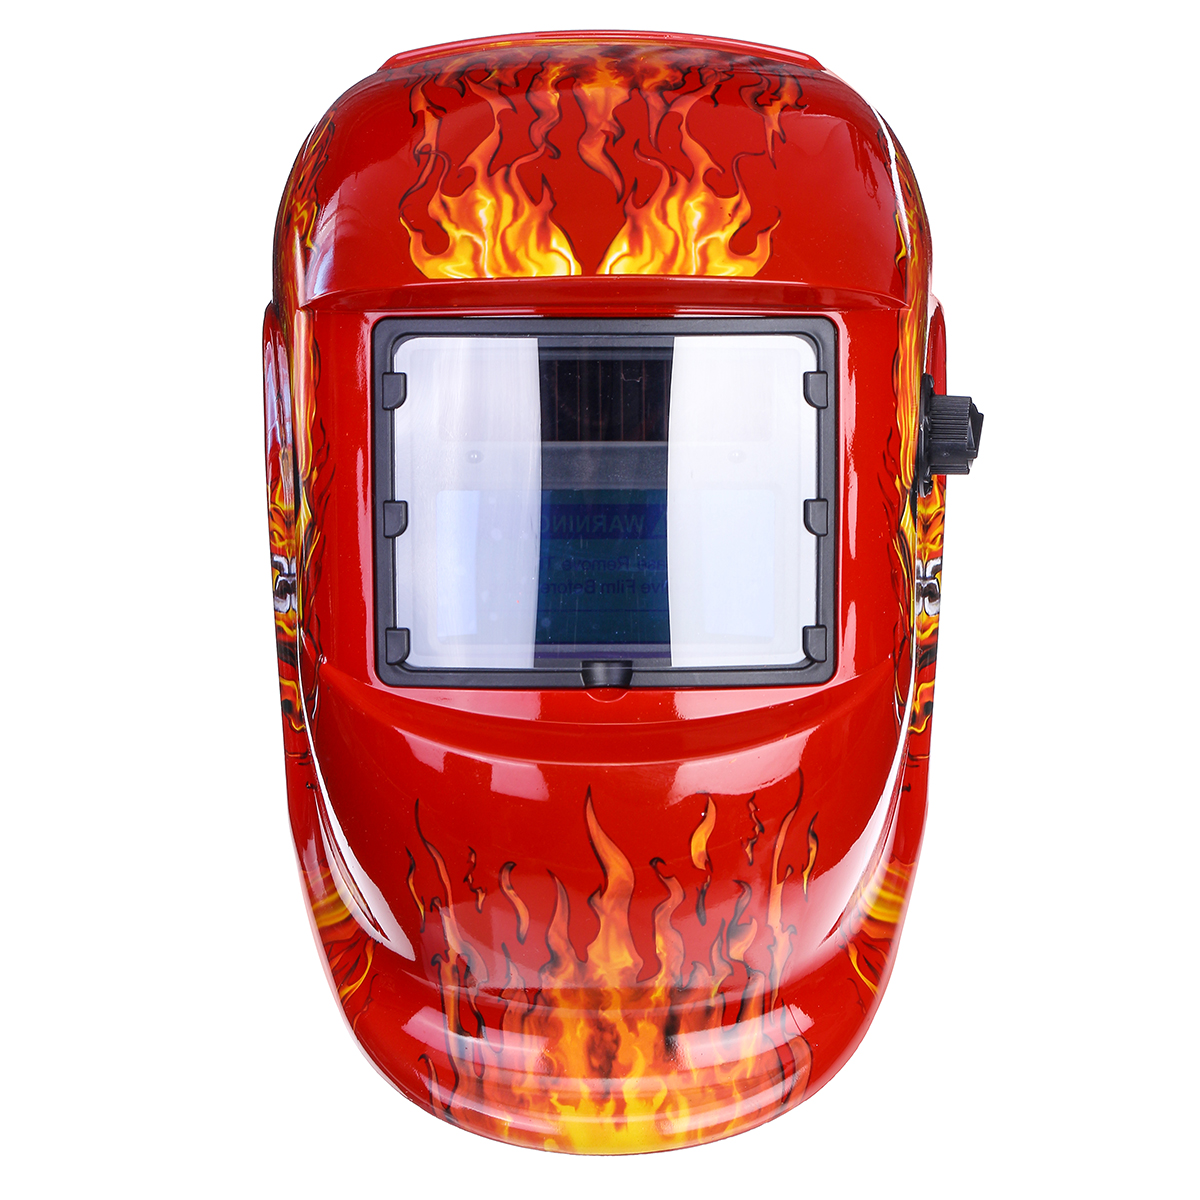 Solar-Auto-Darkening-Welding-Helmet-Len-Mask-Grinding-Welder-Protective-Mask-1625108-6